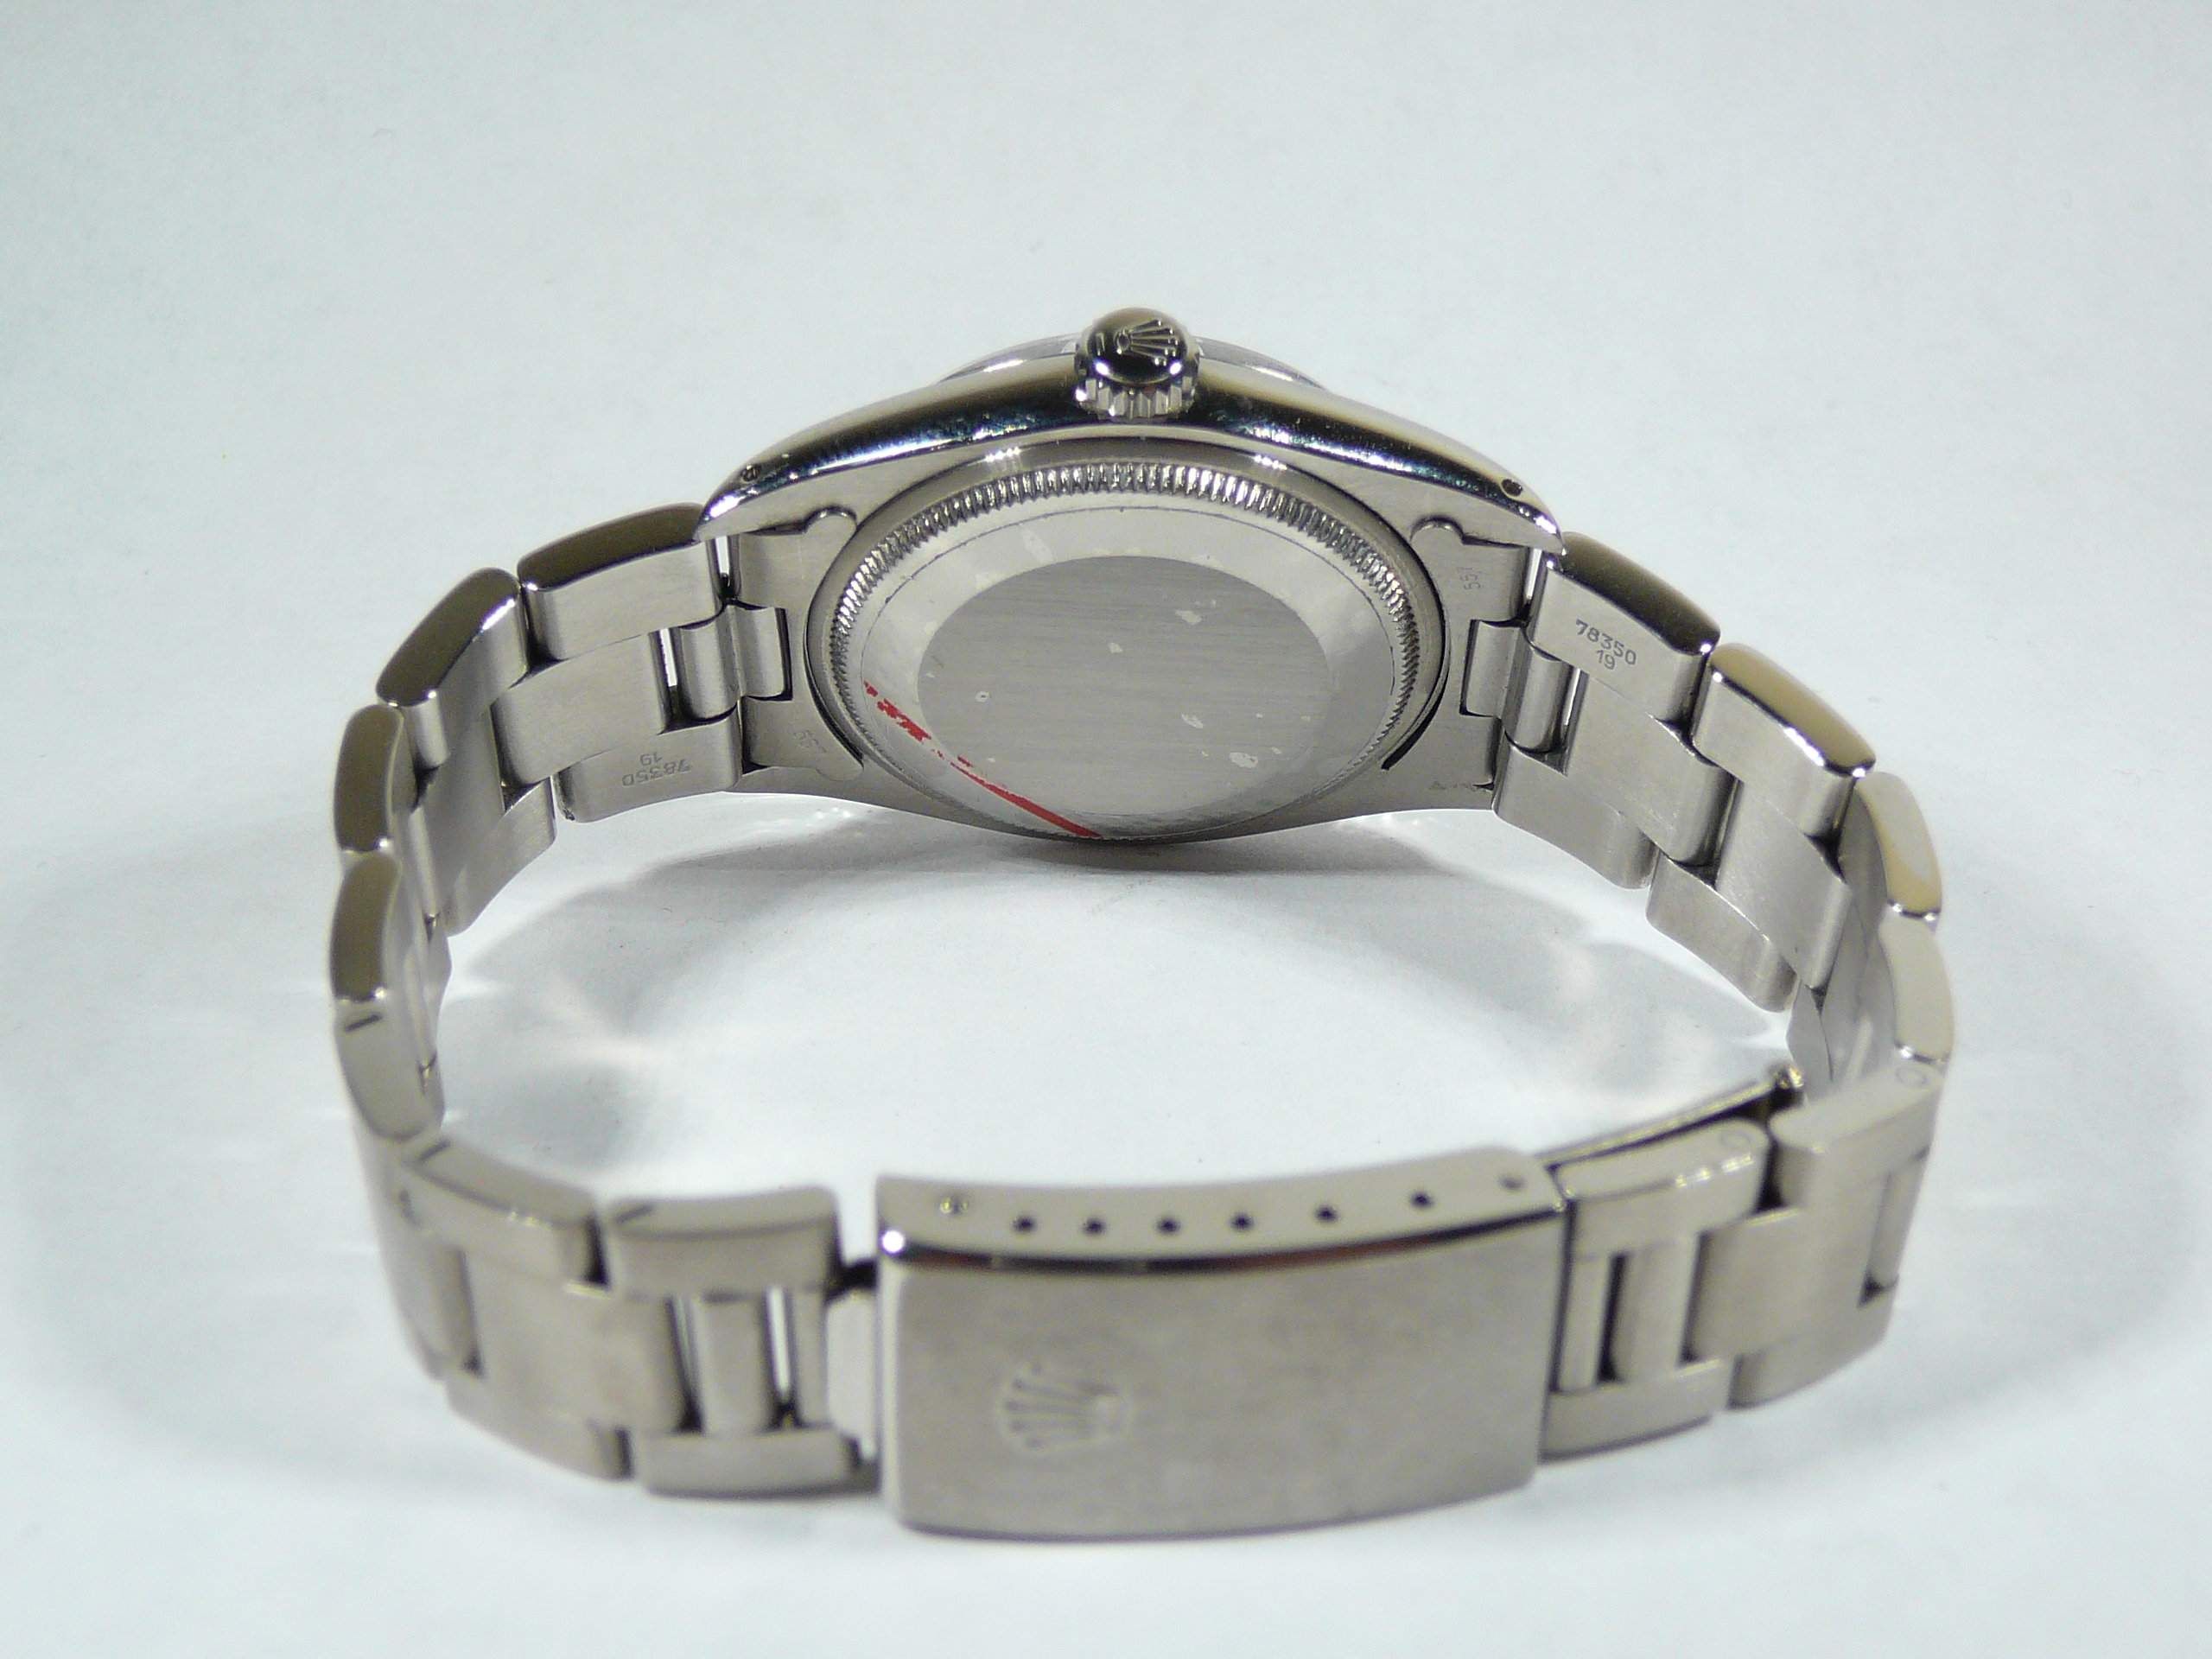 Gents Rolex Wrist Watch - Image 5 of 5